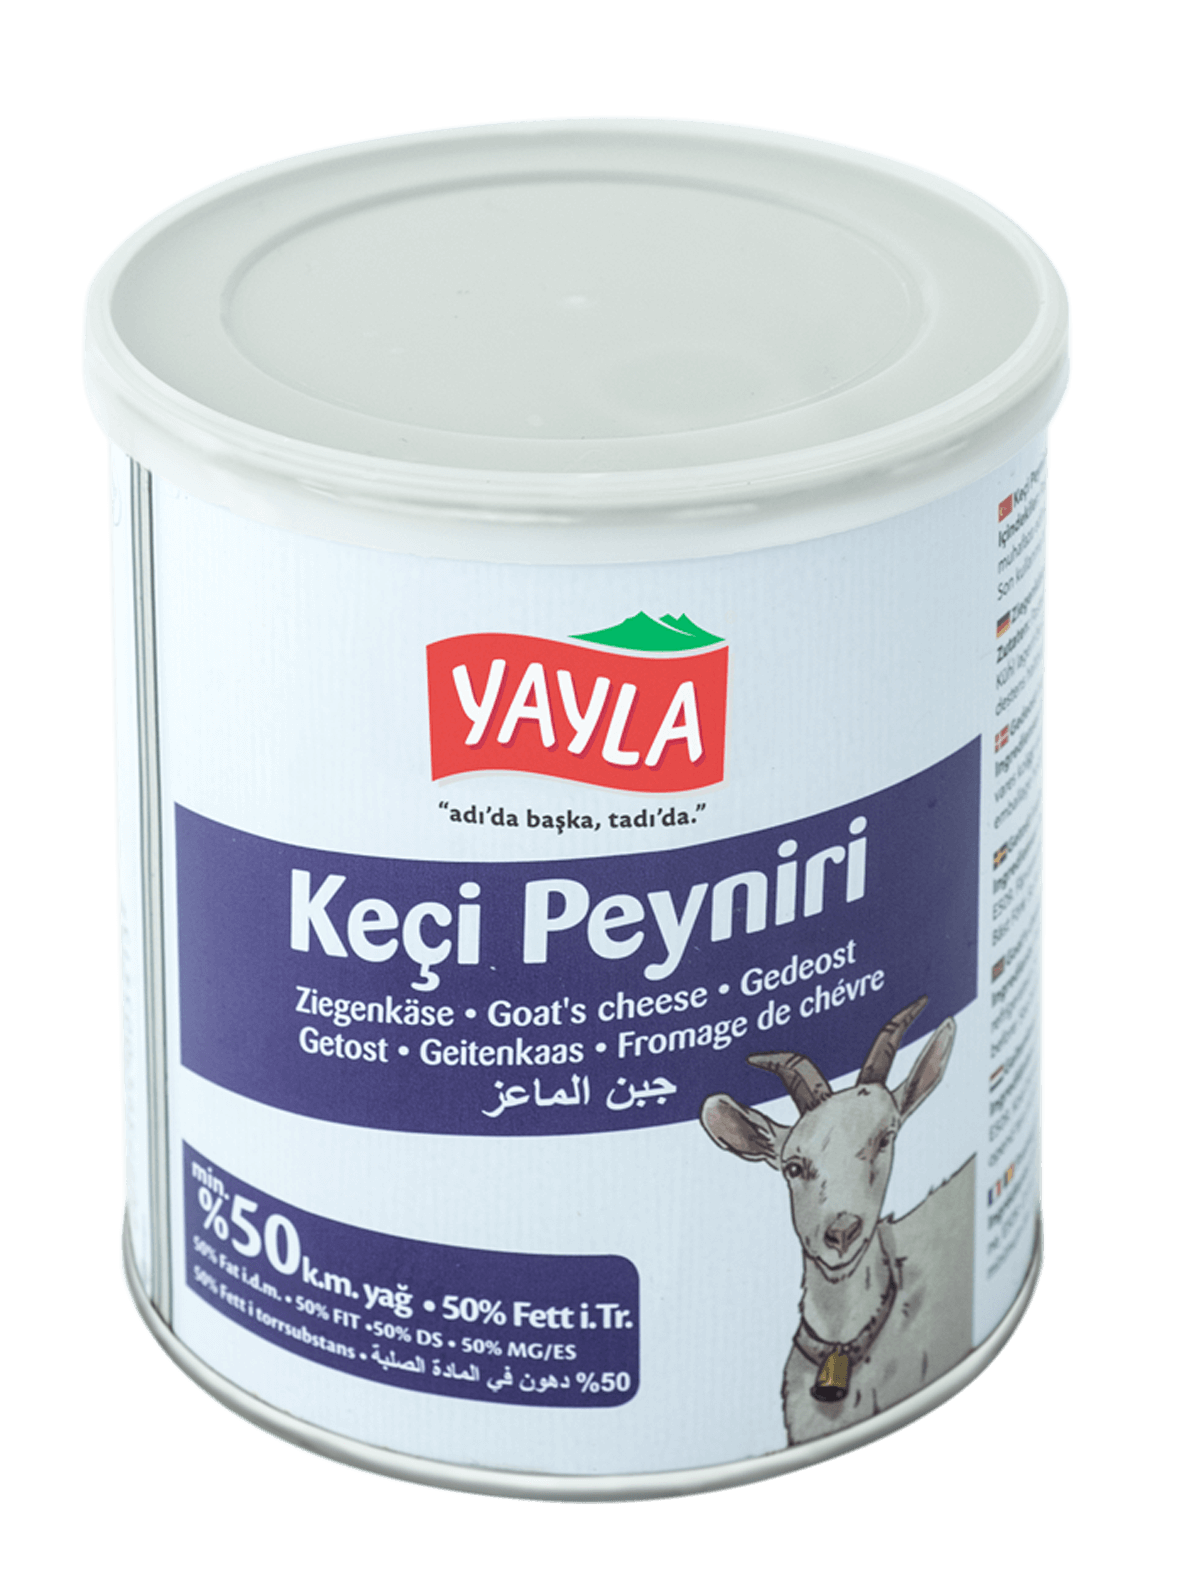 Yayla Keci Peyniri / Ziegenkäse 720g